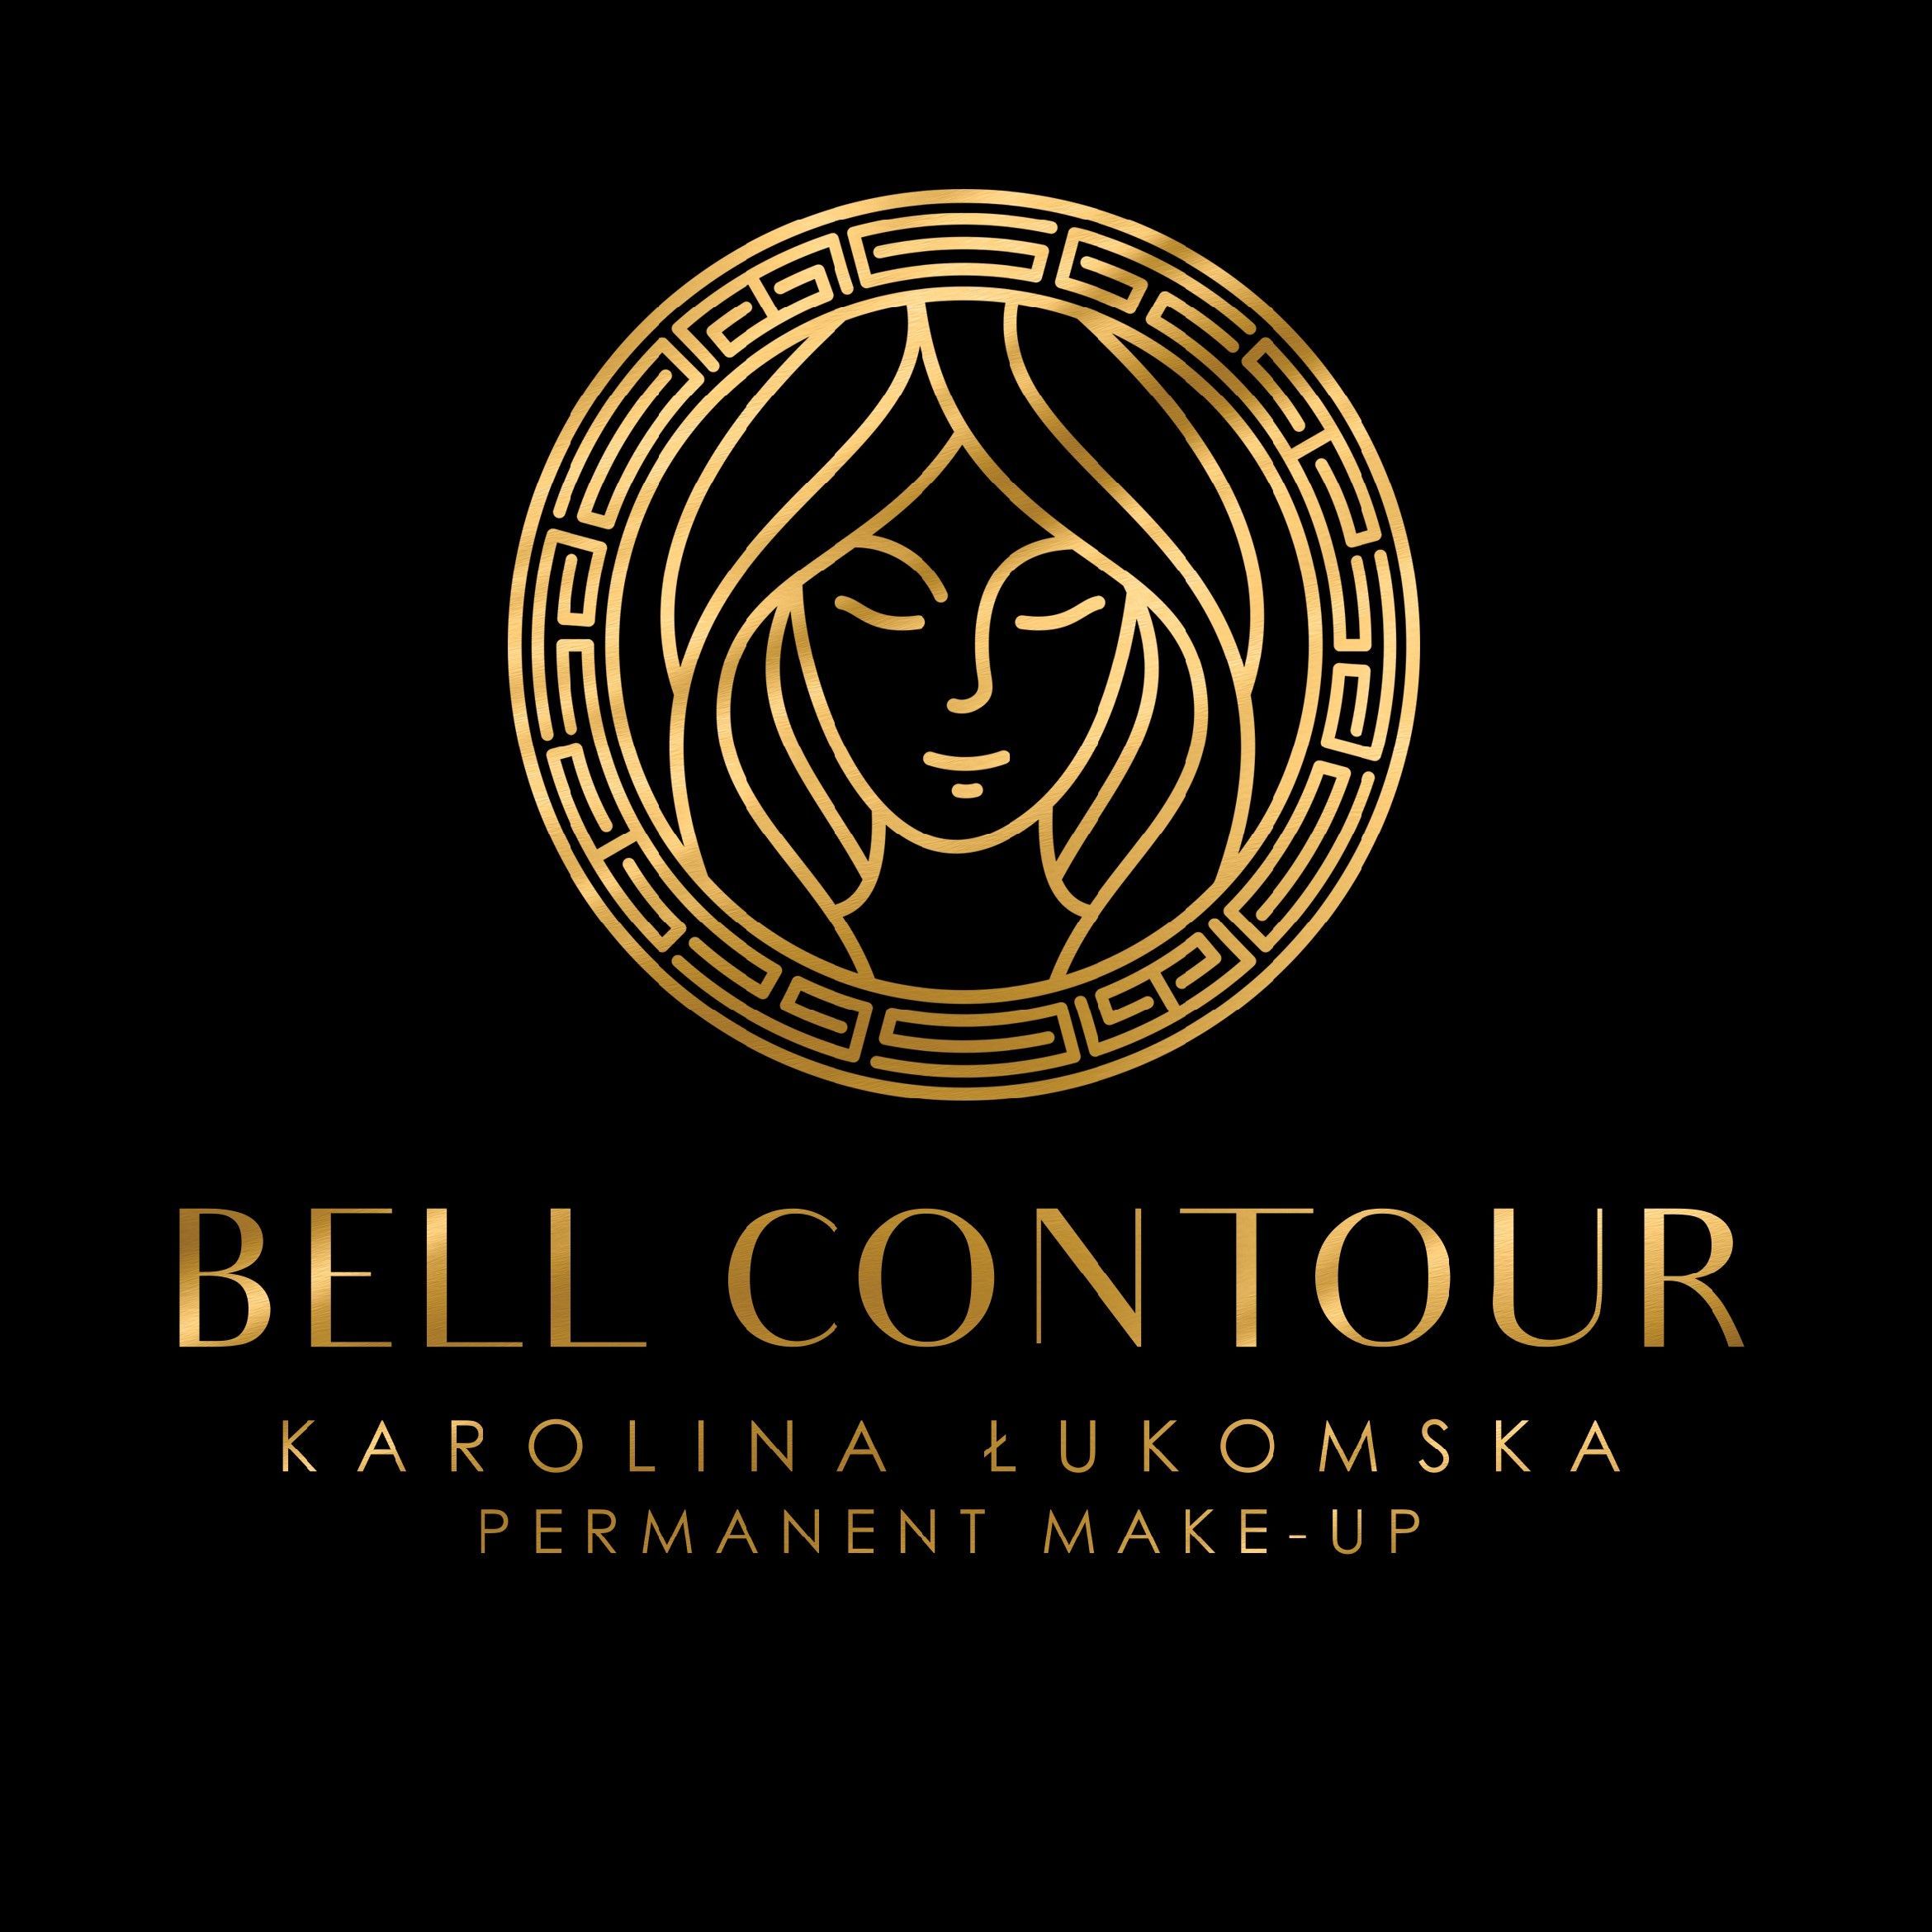 Bell Contour Makijaz Permanentny, Groblowa 5/1, 86-300, Grudziądz